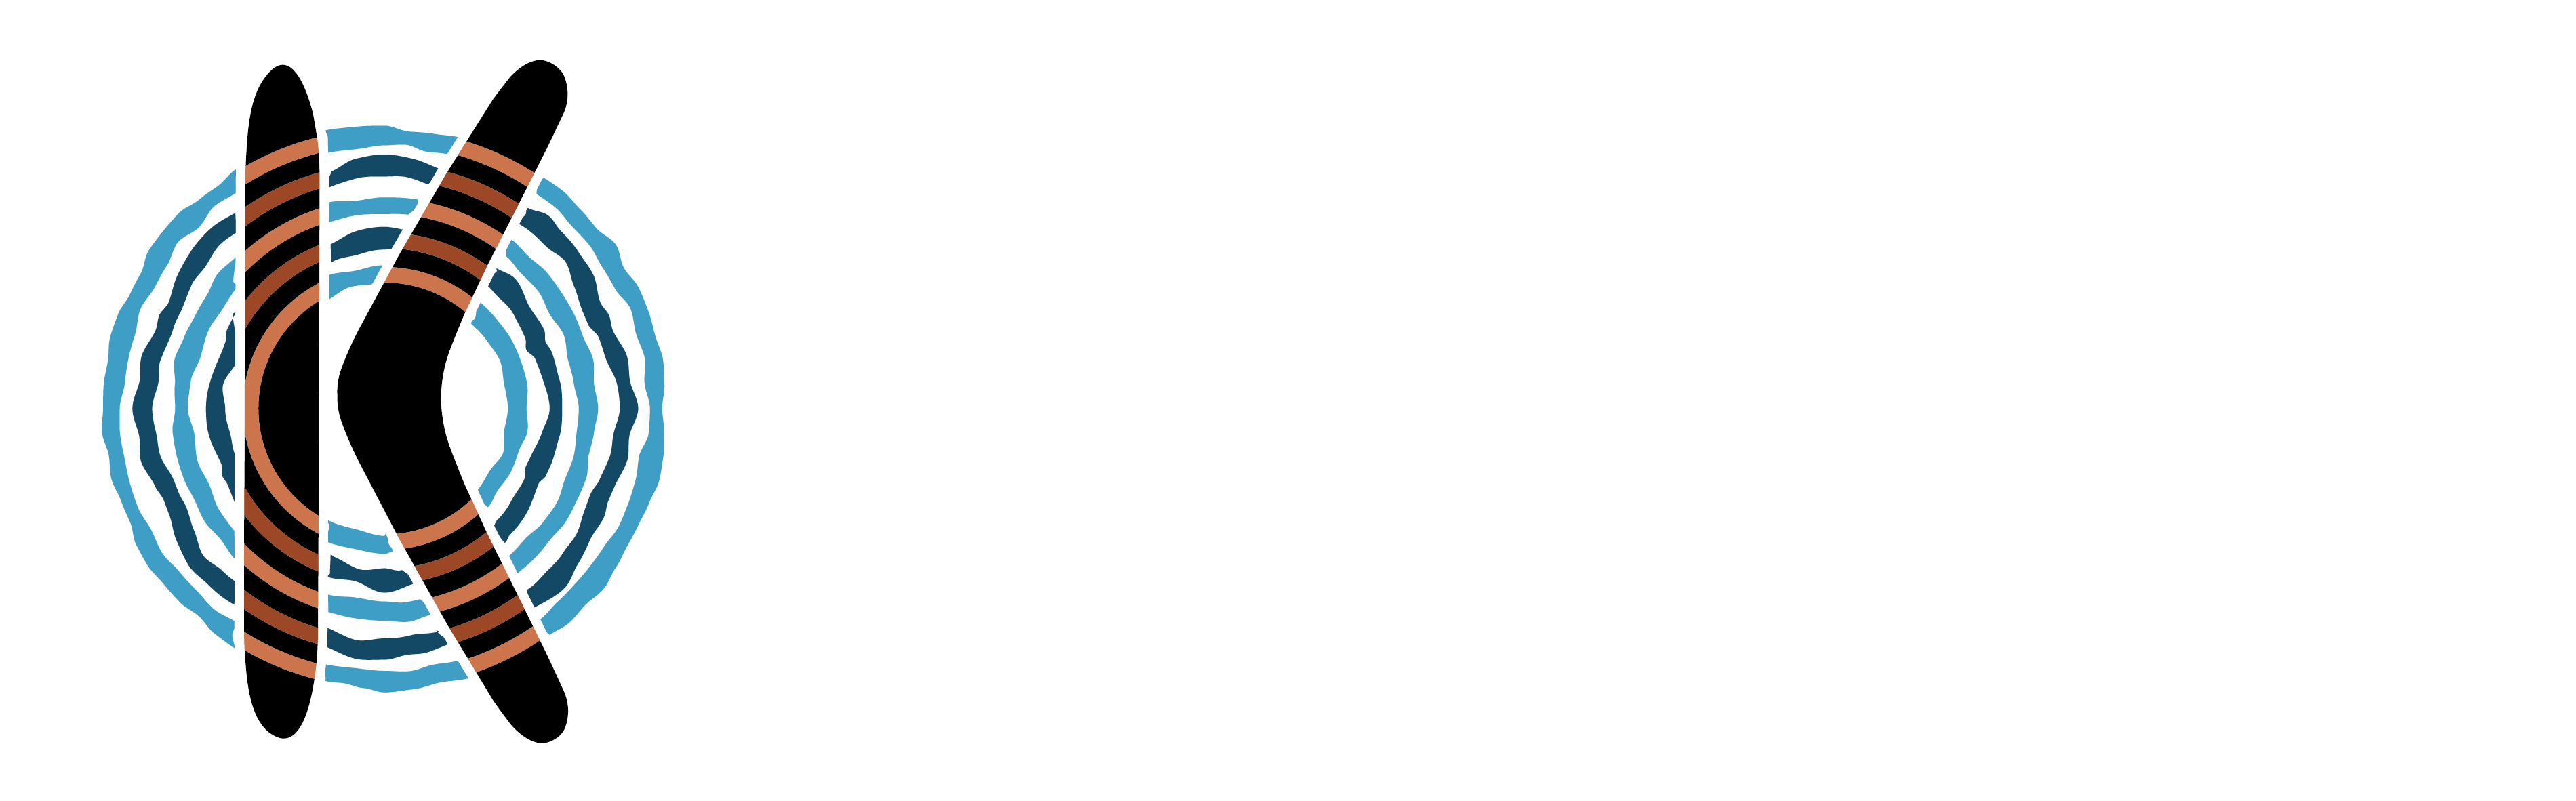 Kutcha Edwards